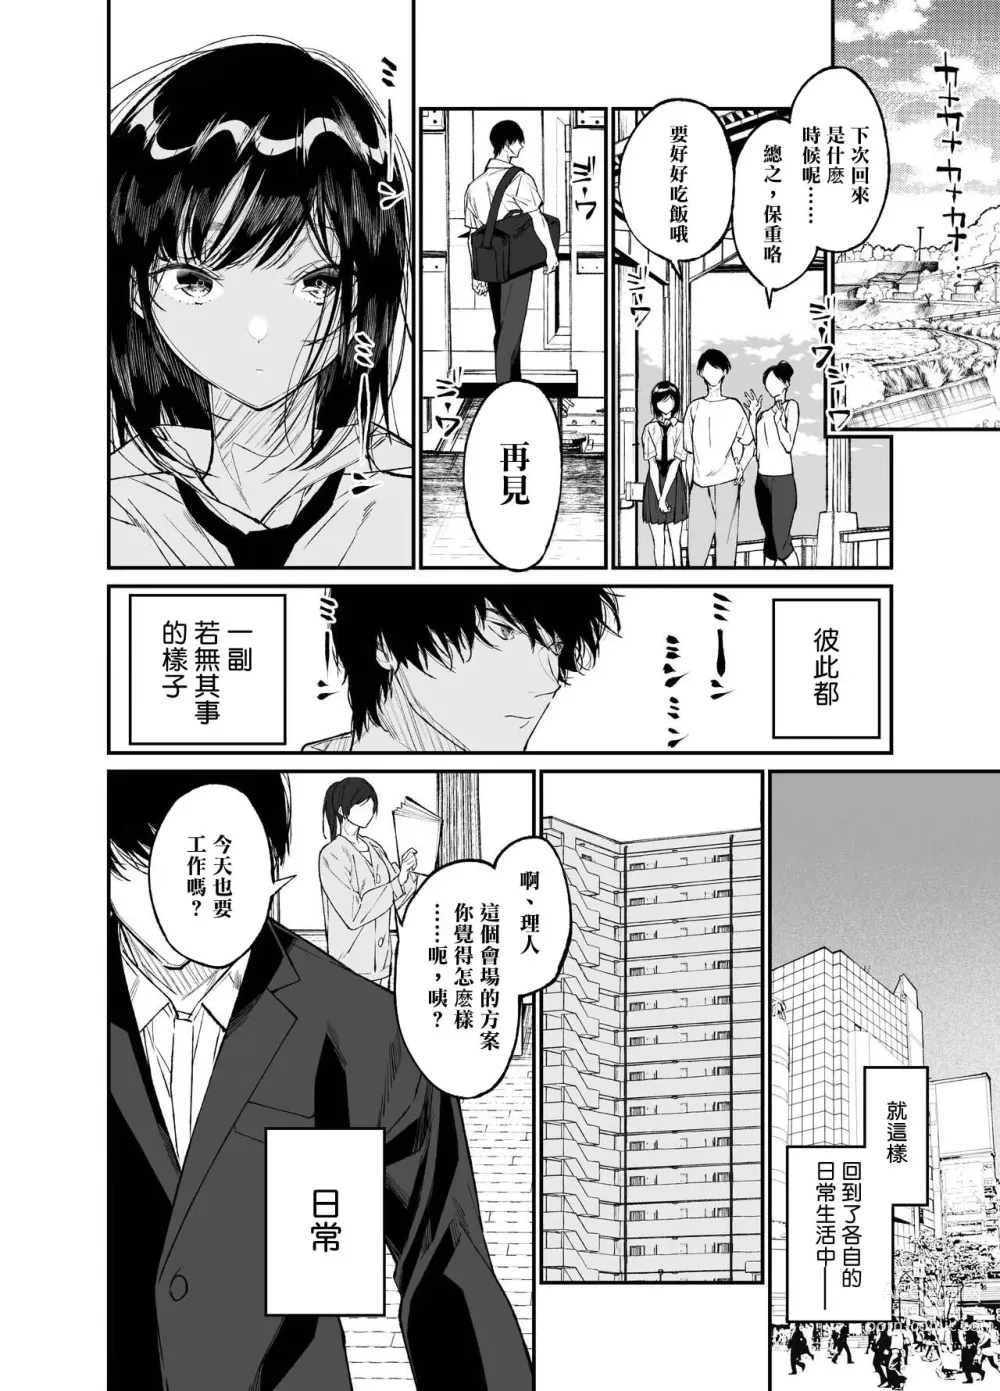 Page 58 of doujinshi Natsu, Shoujo wa Tonde, Hi ni Iru.